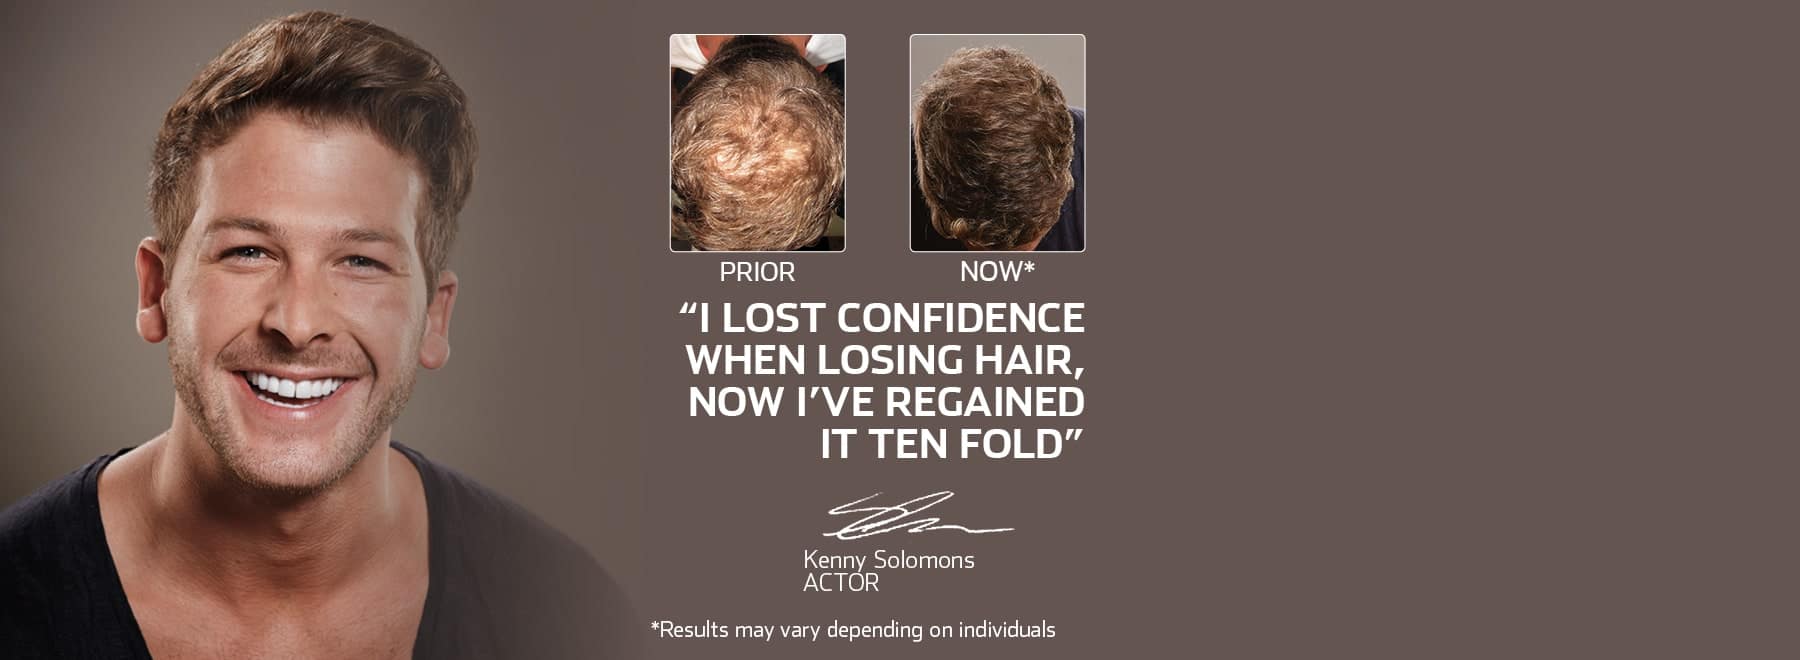 Advanced Hair Studio - Hair Loss & Regrowth Treatment Clinic Australia